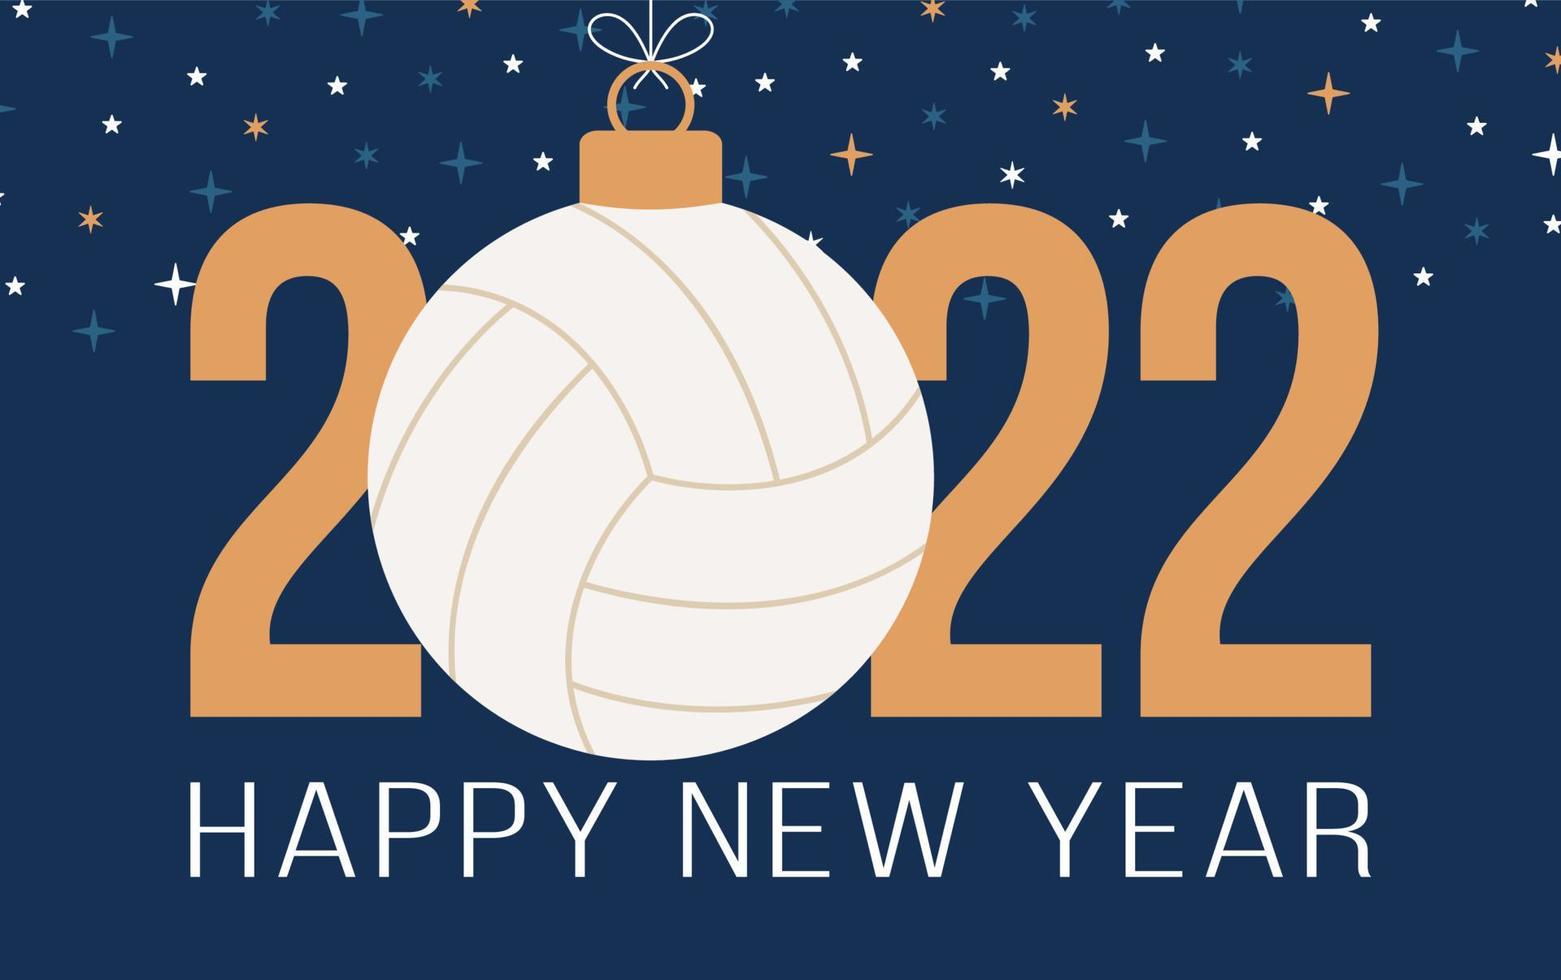 2022 gelukkig nieuwjaar volleybal vectorillustratie. vlakke stijl sport 2022 wenskaart met een volleybal bal op de achtergrond in kleur. vectorillustratie. vector